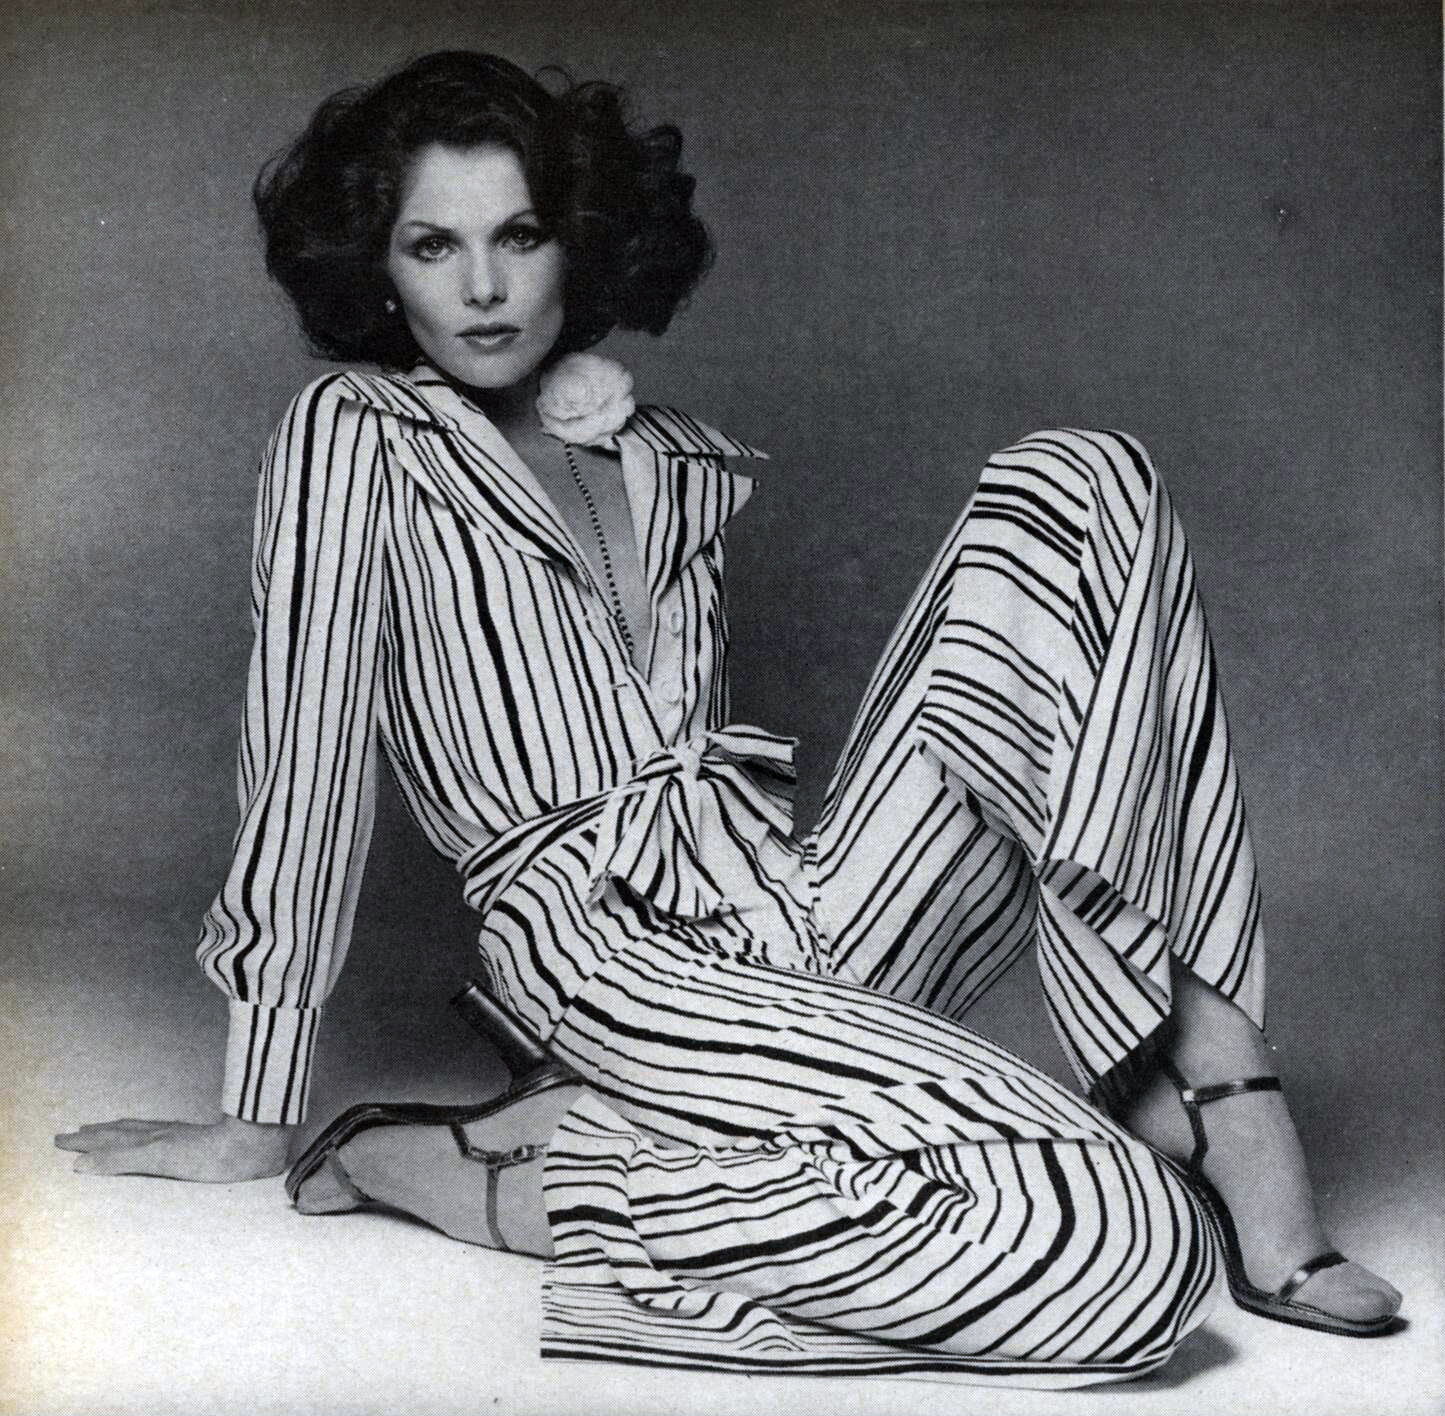 Vogue (Mar 1, 1974)_scavullo_chiles_gillette_103.jpg